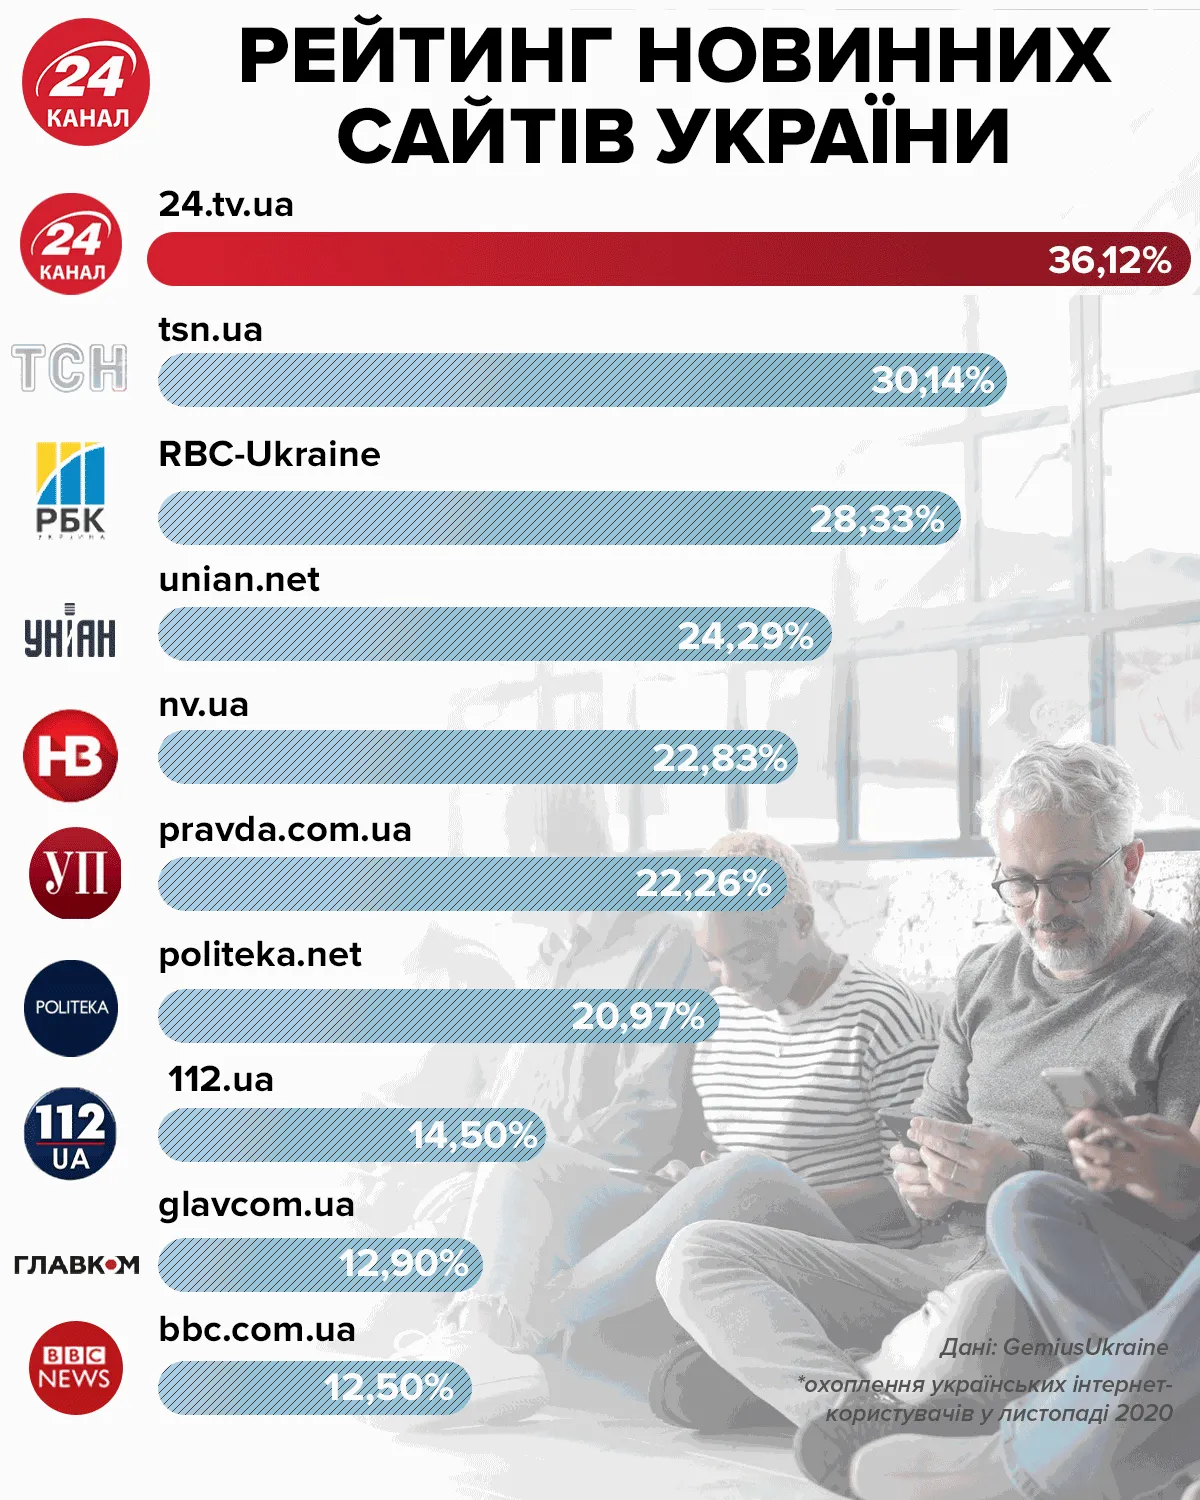 Найпопулярніші інформаційні сайти України у листопаді 20202 року